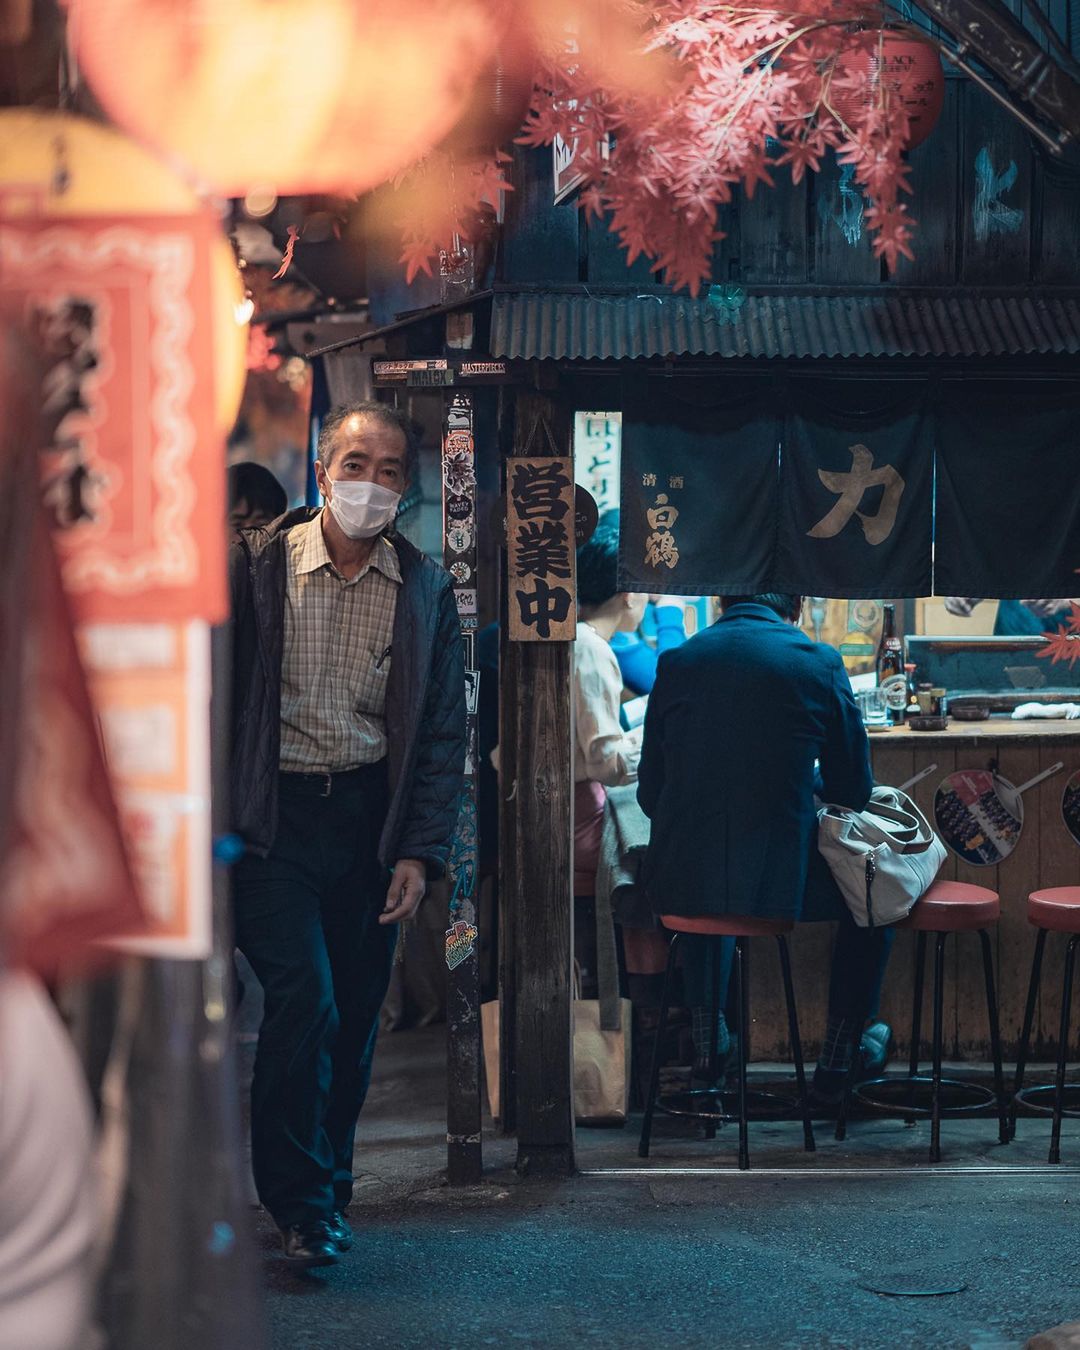 Непередаваемое очарование японских улиц на снимках Пэта Кея фотографии, фотограф, талантливый, более, в Instagram, делится, работами, Своими, пейзажи, уличные, захватывающие, запечатлел, Японию, посетил, недавно, городских, пейзажей, уличной, много, также